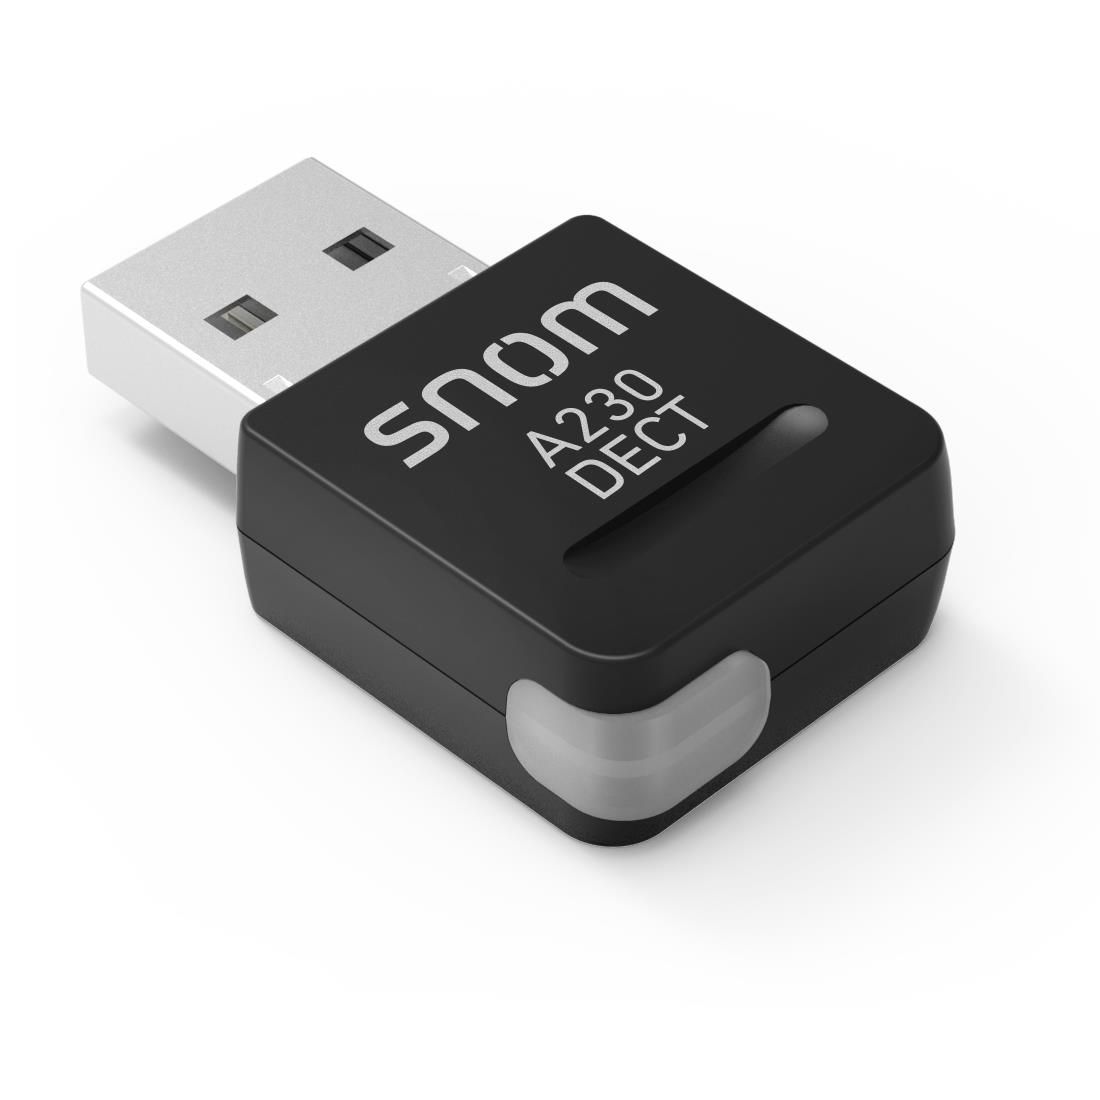 Snom A230 USB DECT